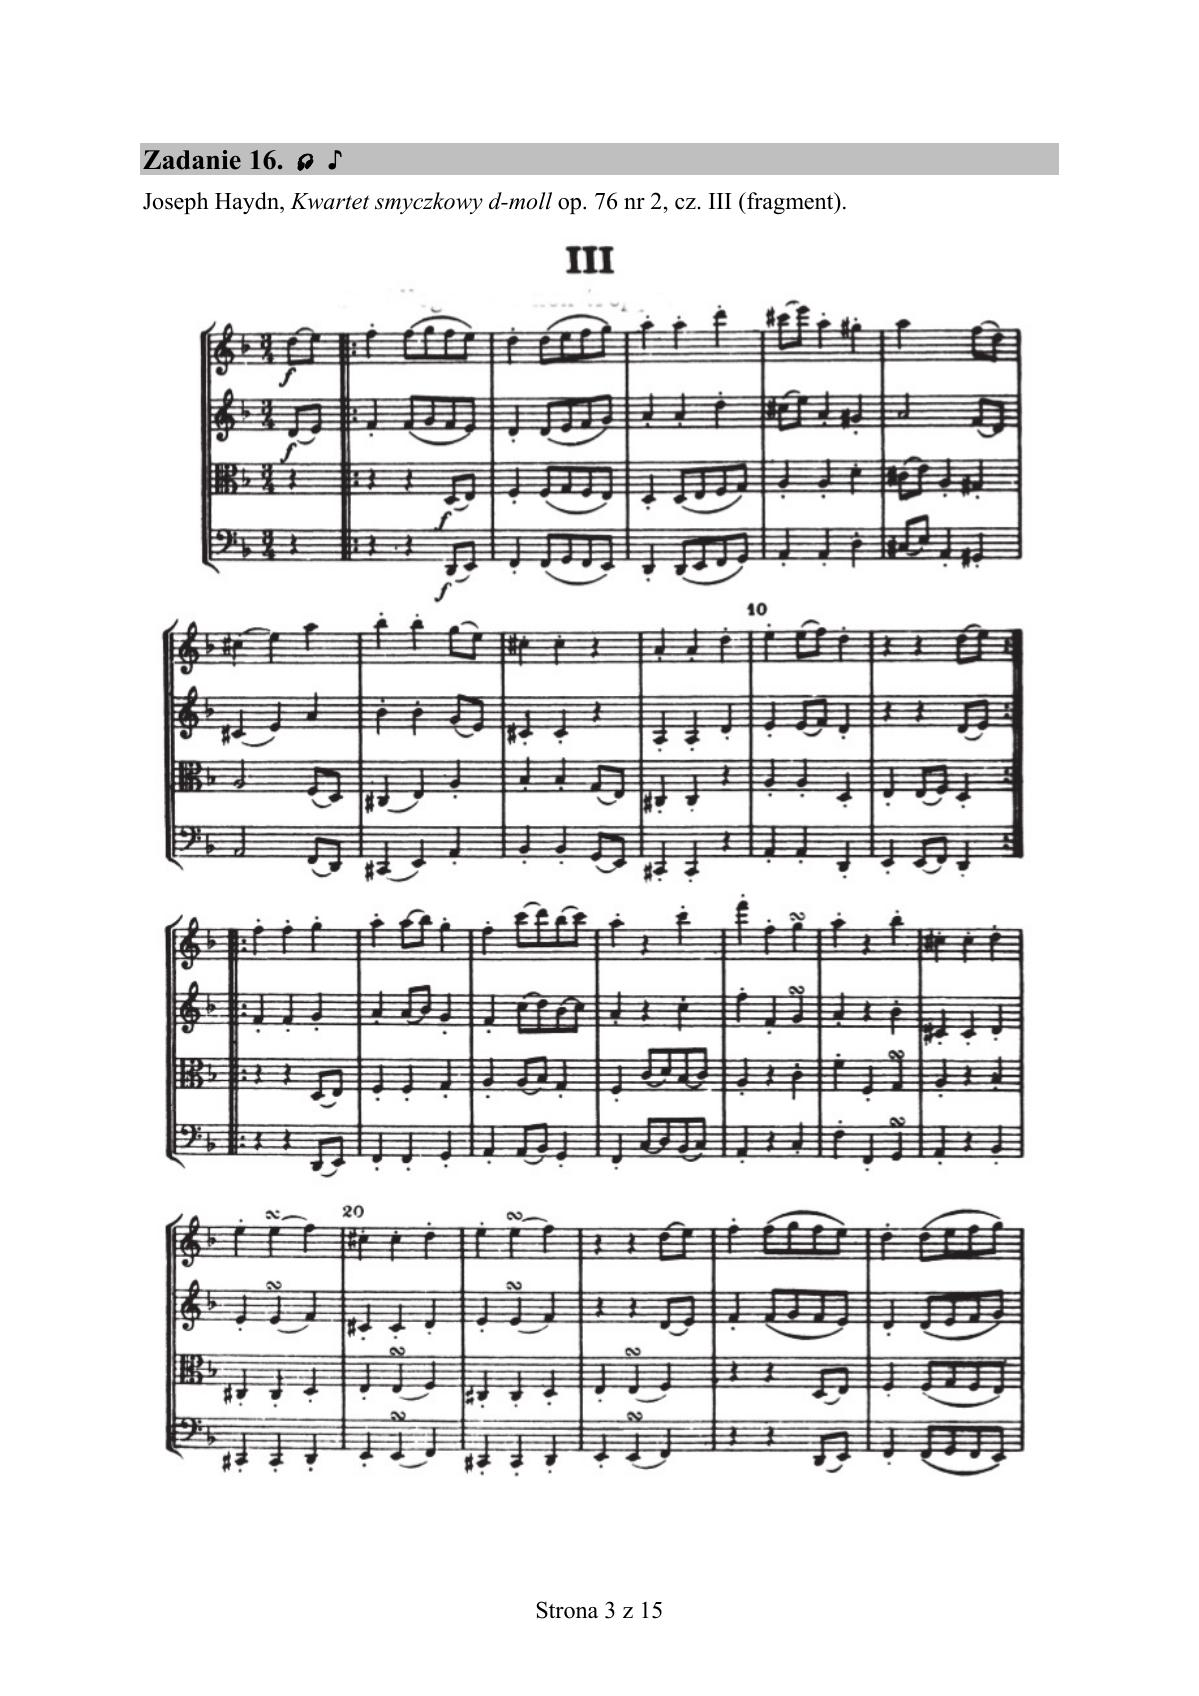 zadanie 16 - Joseph Haydn, Kwartet smyczkowy d-moll op. 76 nr 2, cz. III - fragment-1